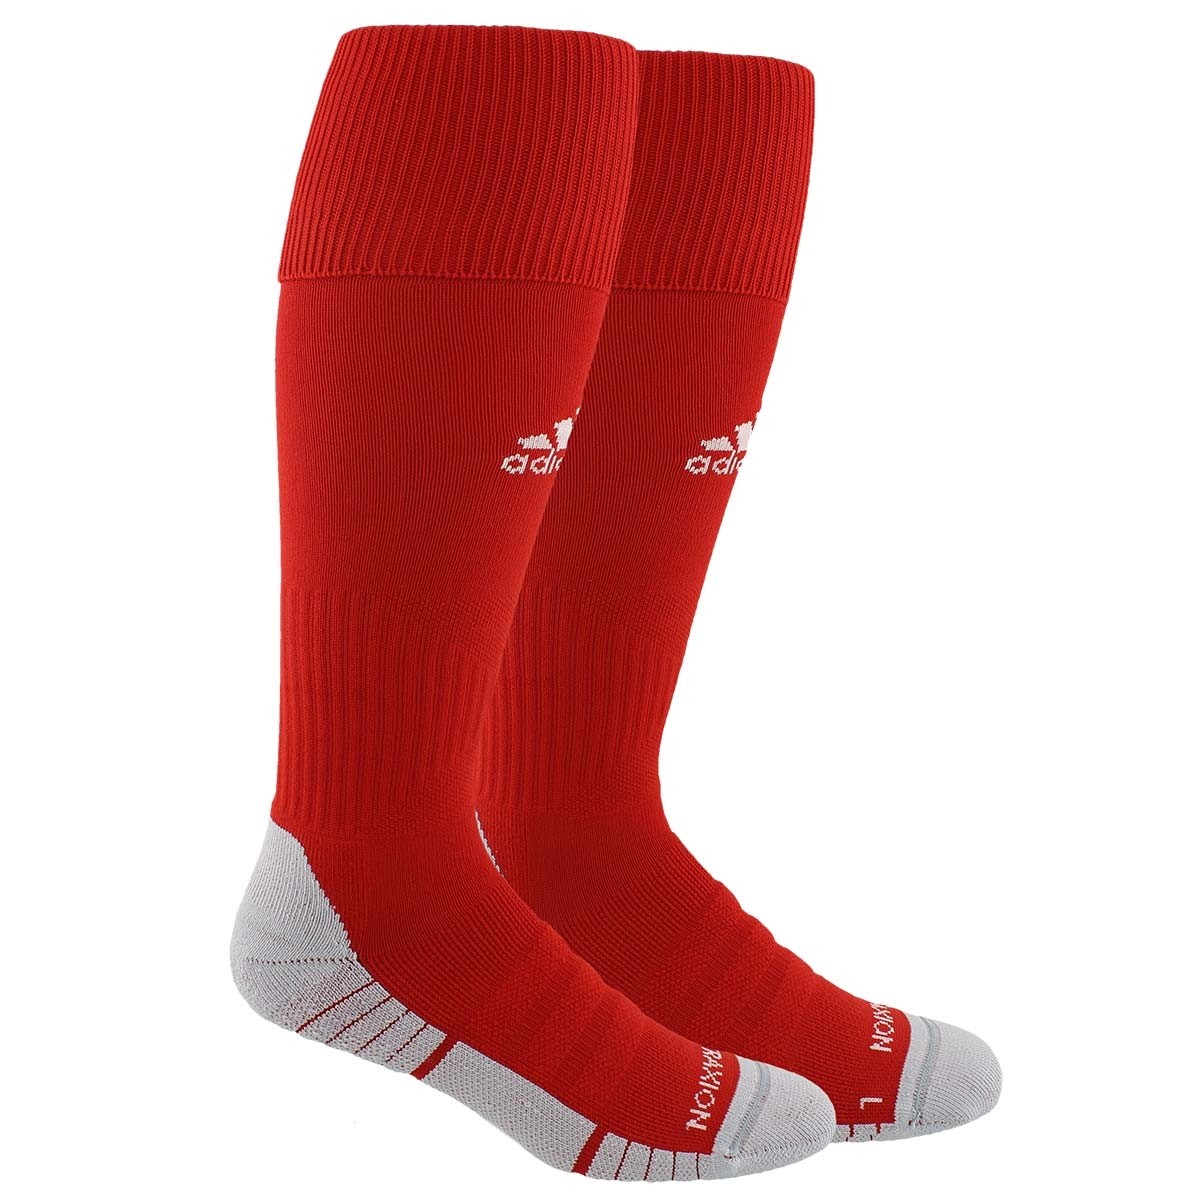 adidas team speed socks